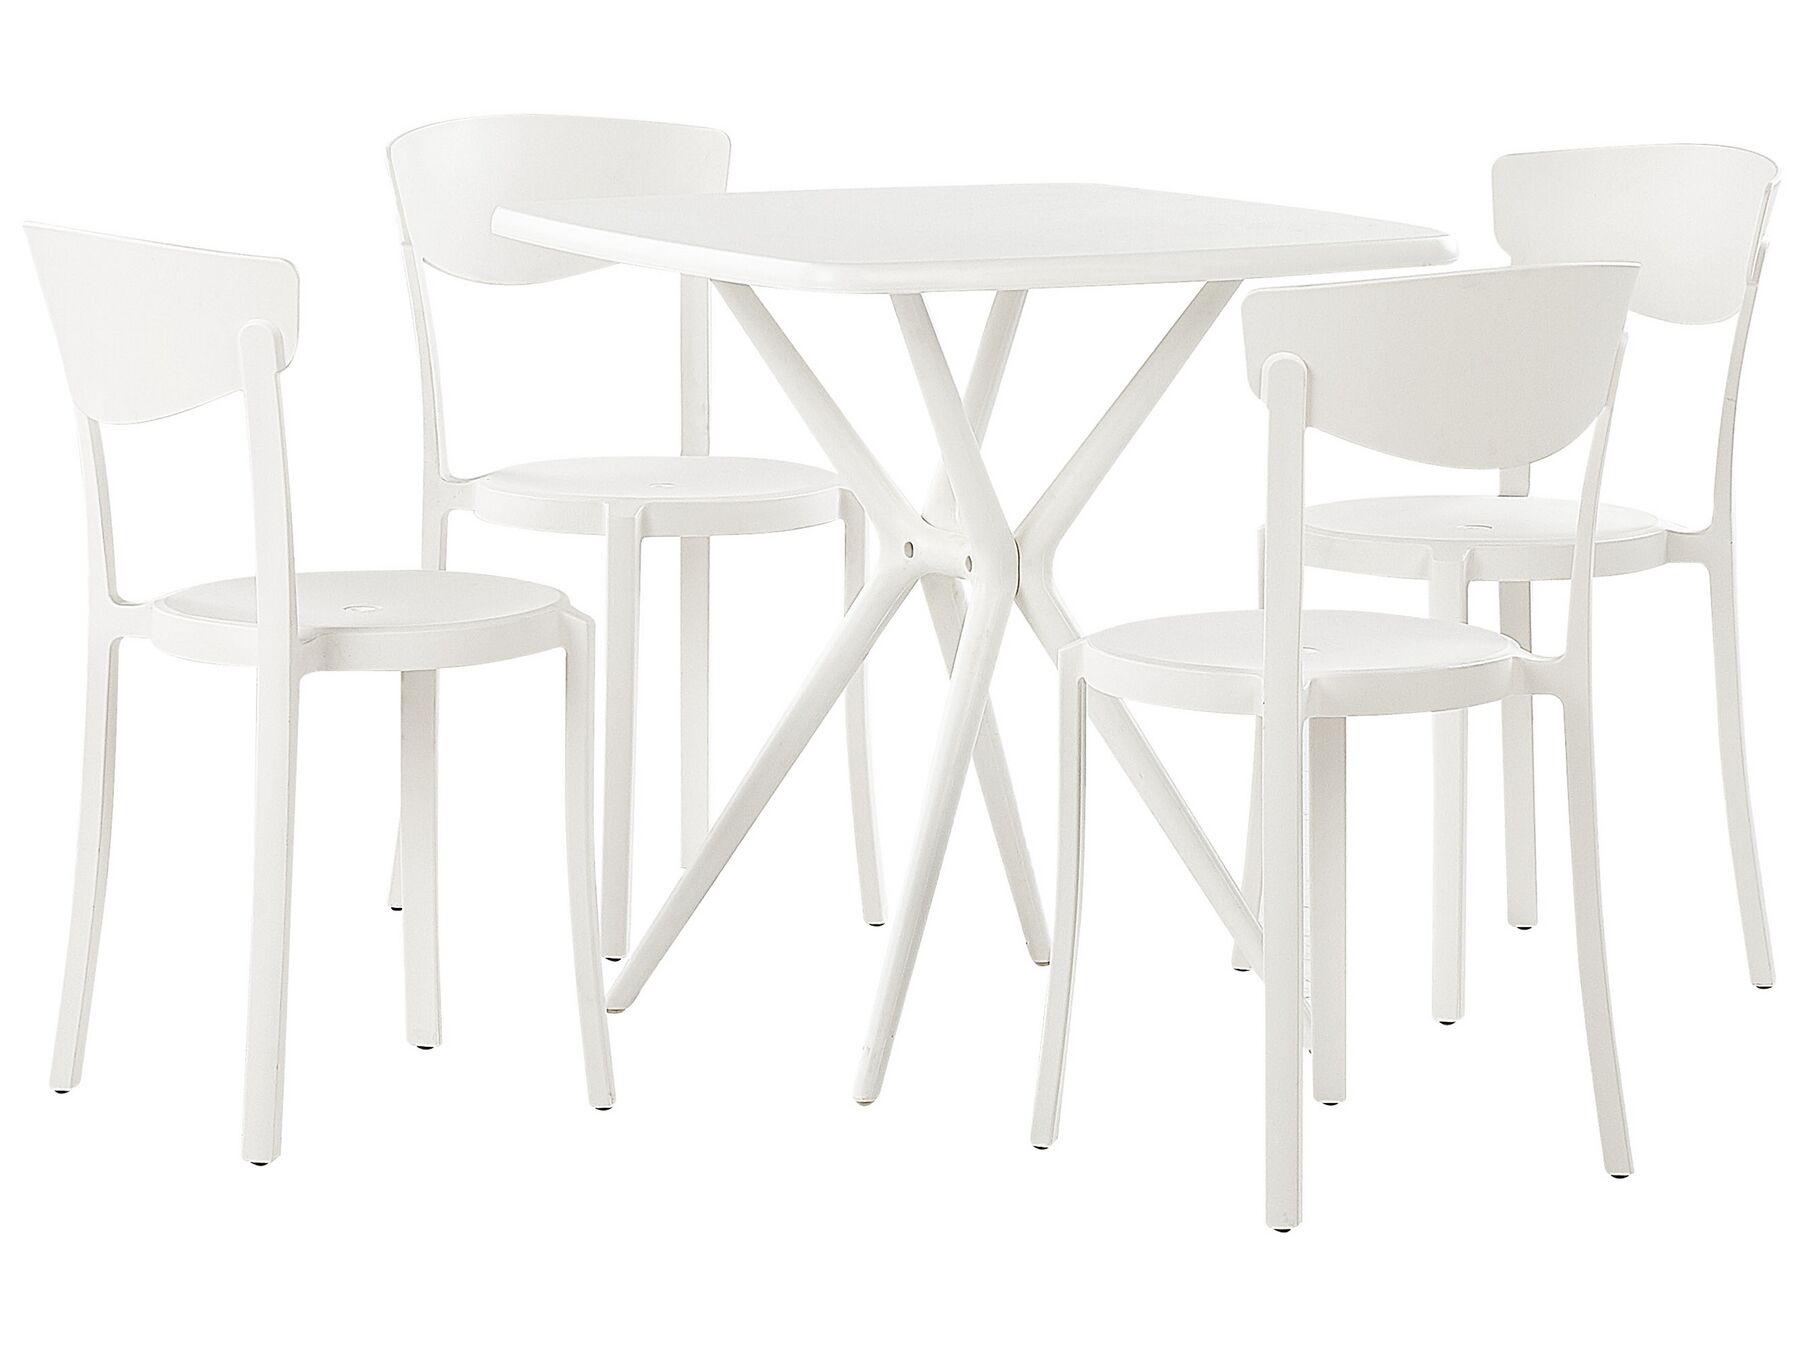 Záhradná súprava stola a 4 stoličiek biela SERSALE / VIESTE_823841